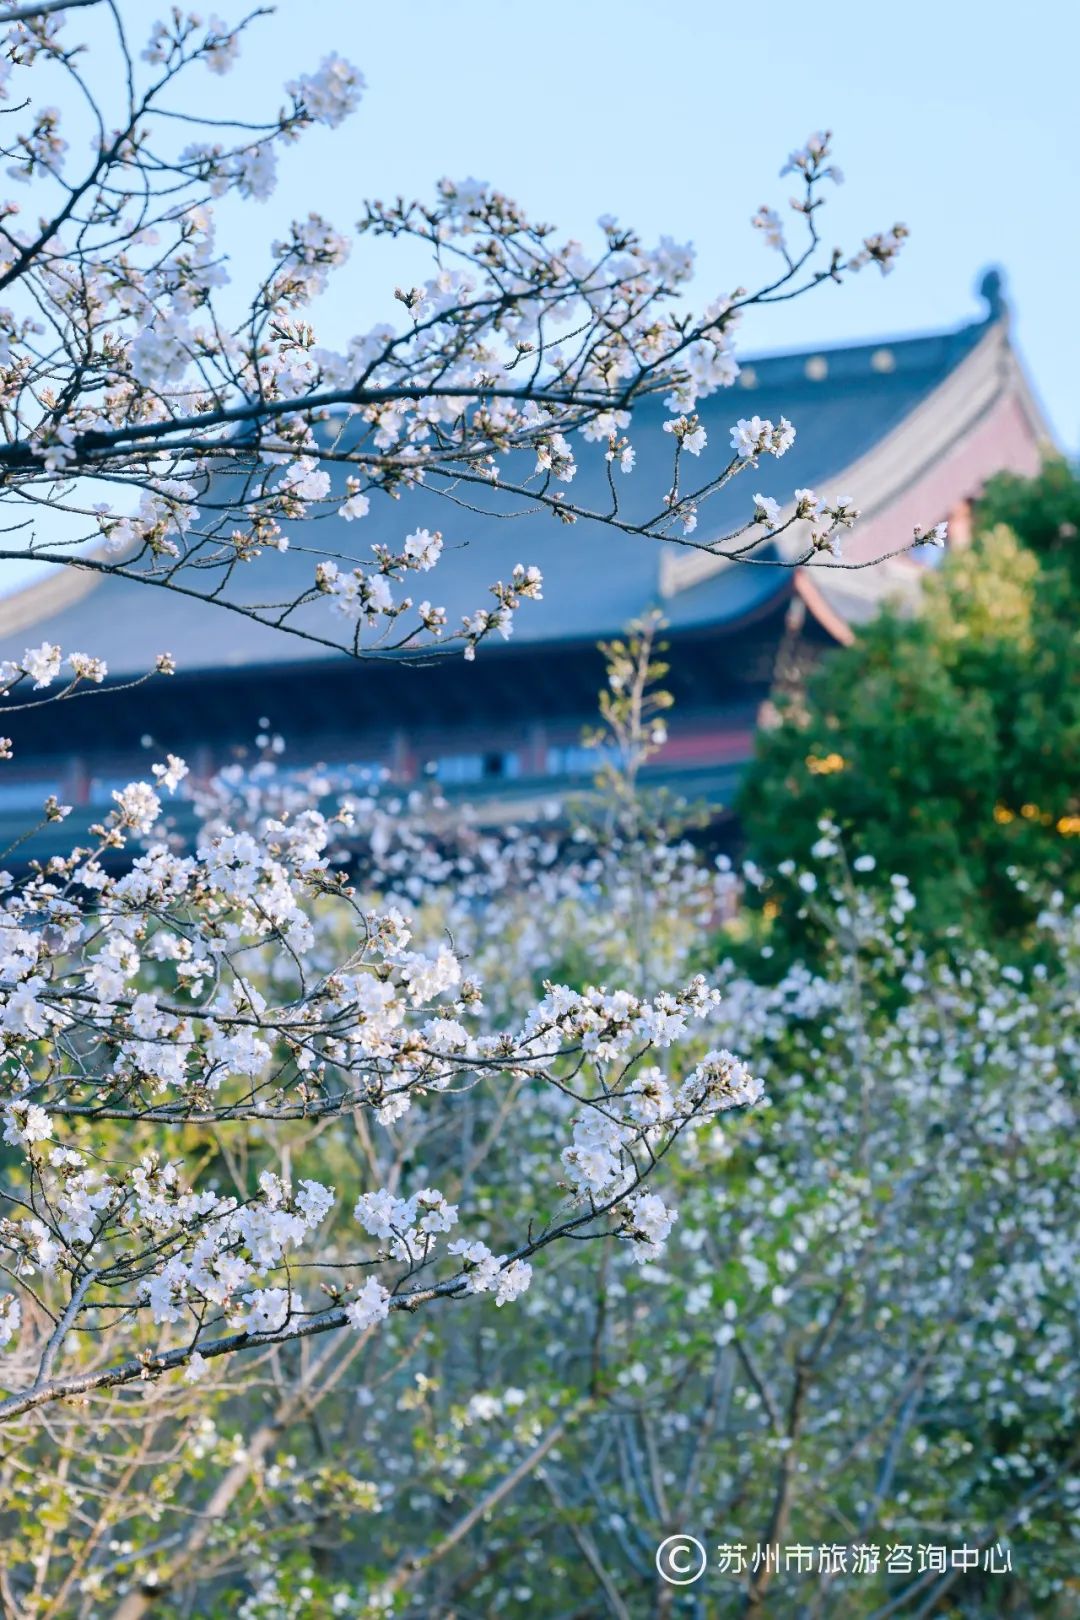 落樱成诗，苏州的樱花没有缺席，还好没错过，温暖的阳春就在前方